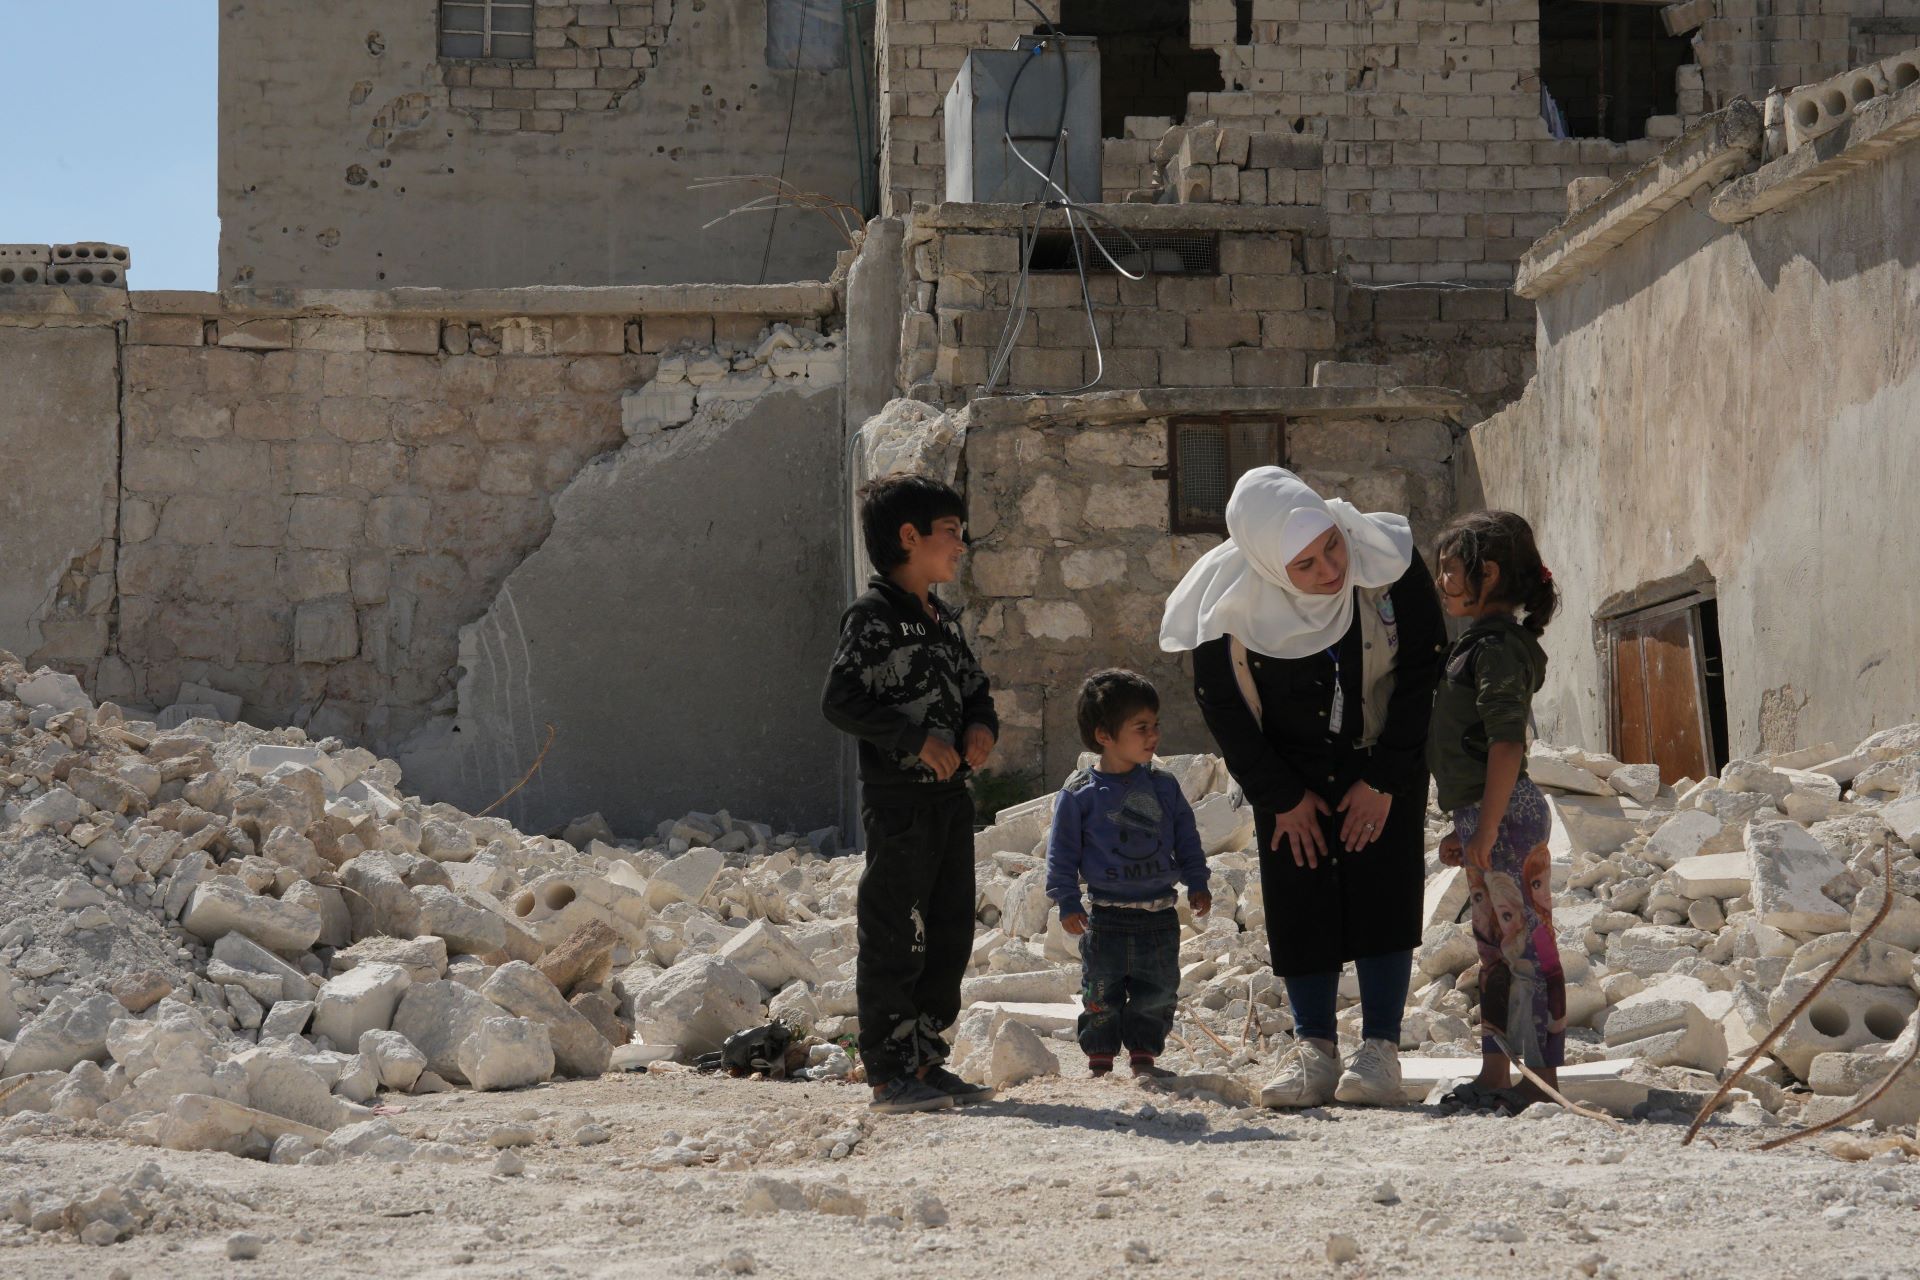 Das Bild zeigt die Bonyan-Helferin Sana umgeben von drei Kindern unterschiedlichen Alters. Sie stehen inmitten von Trümmern, Sana beugt sich zu einem der Kinder hinunter.